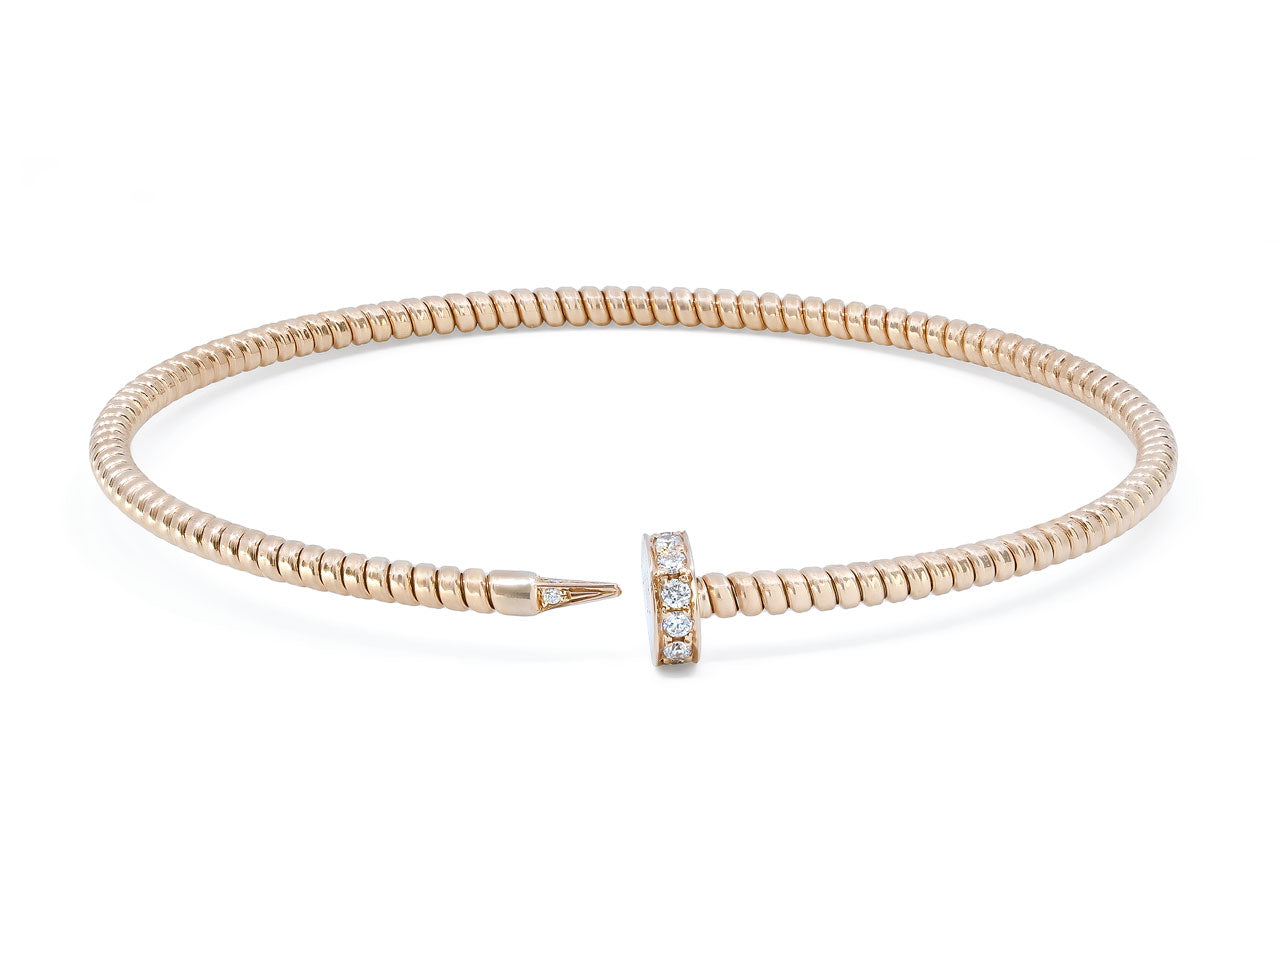 Skinny Tubogas Nail Bracelet in 18K Rose Gold, by Beladora